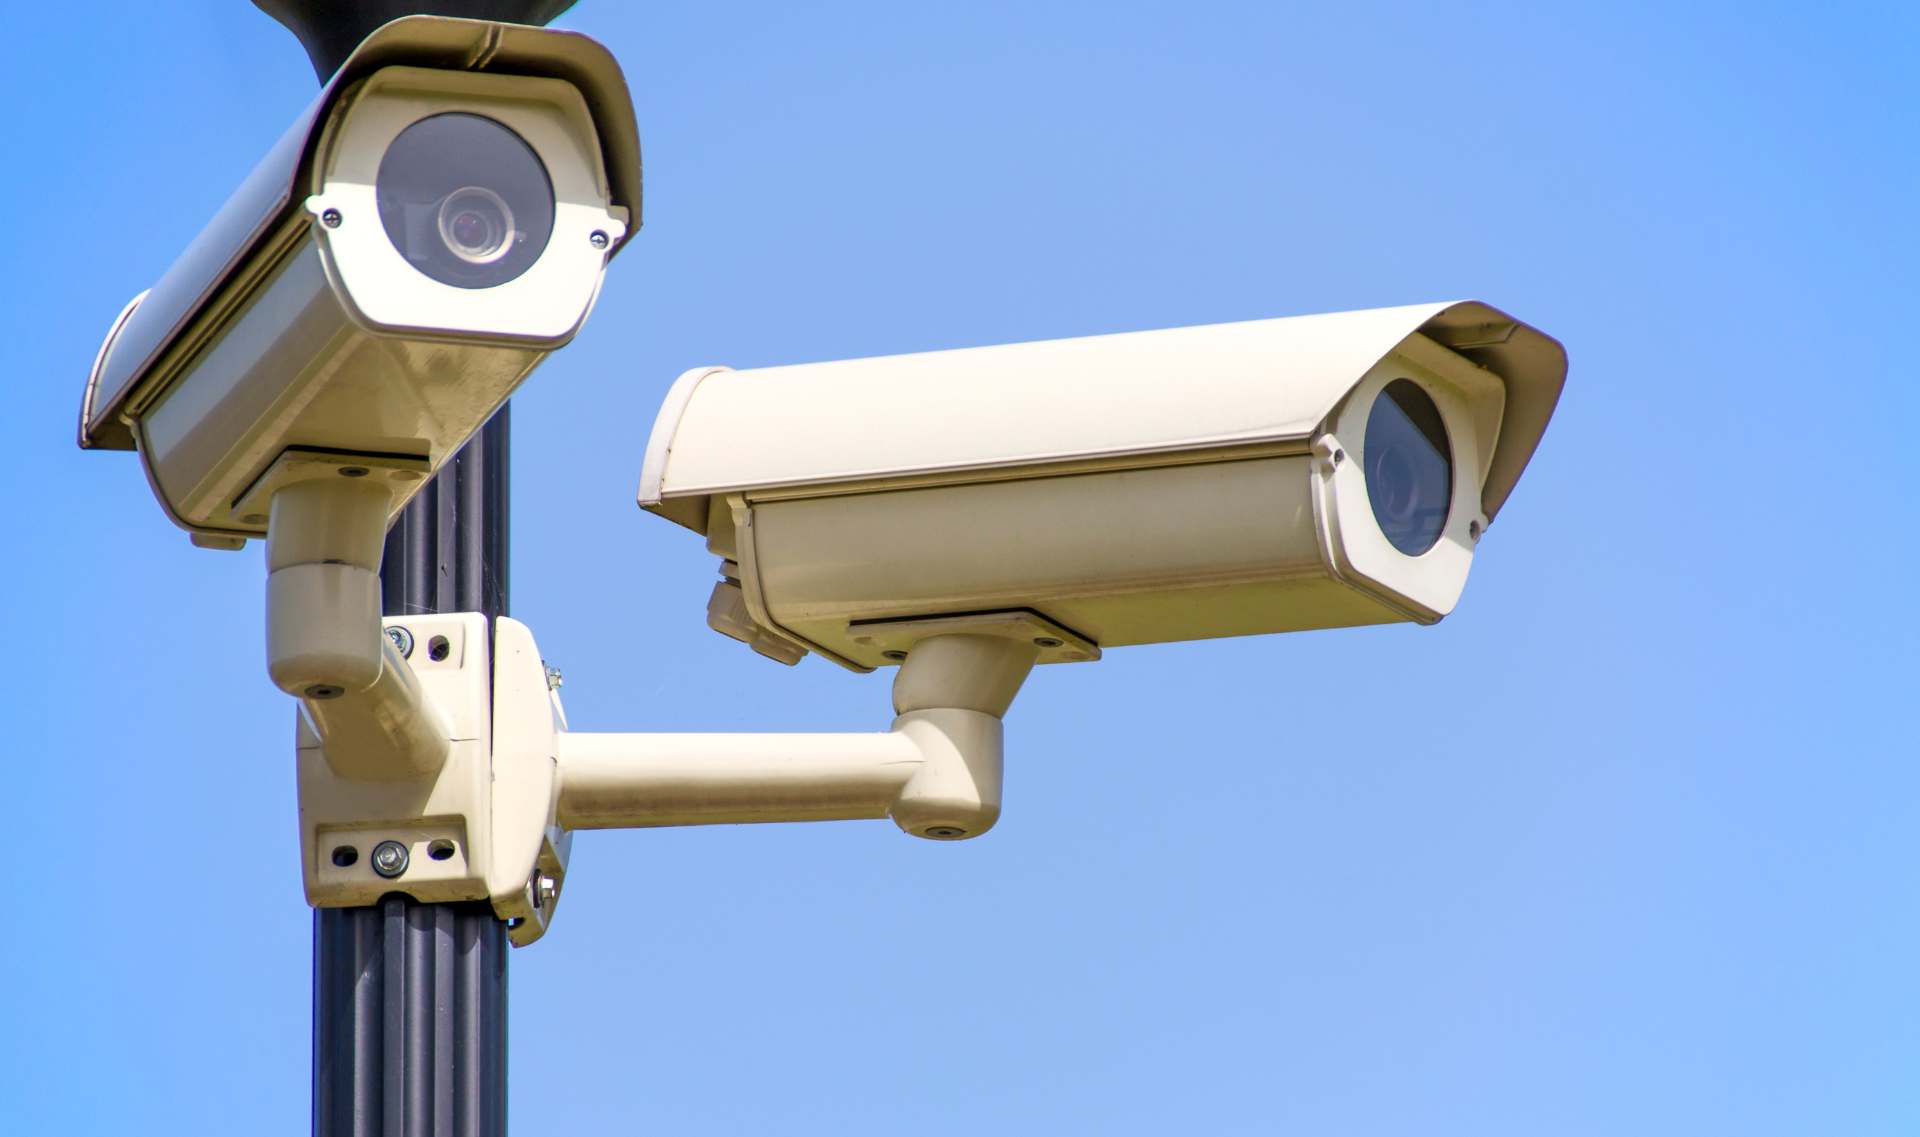 Styrk din sikkerhed med videoovervågning 